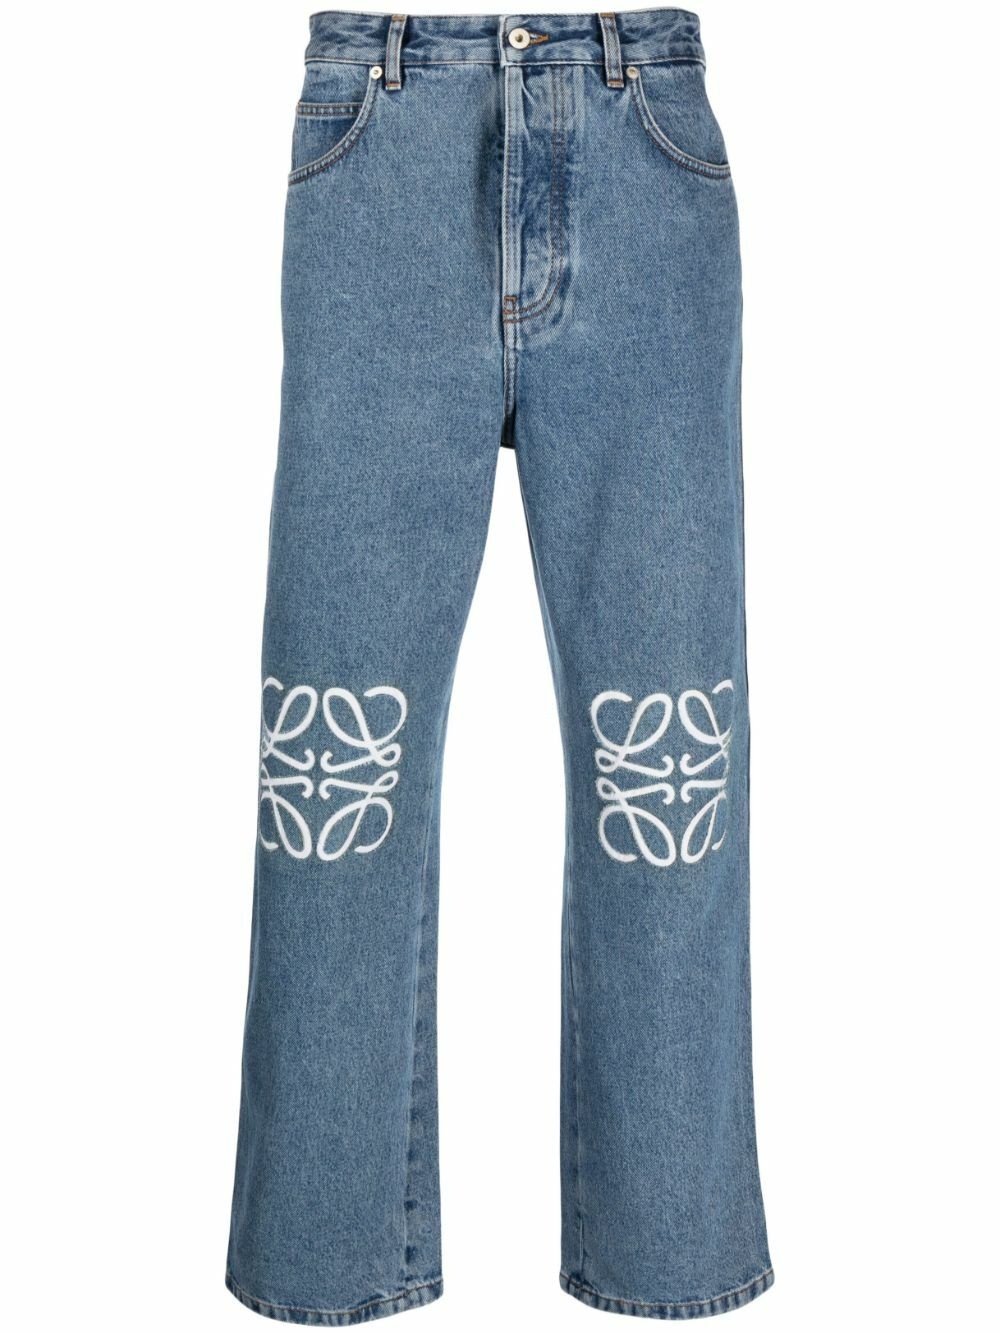 LOEWE - Jeans With Print Loewe